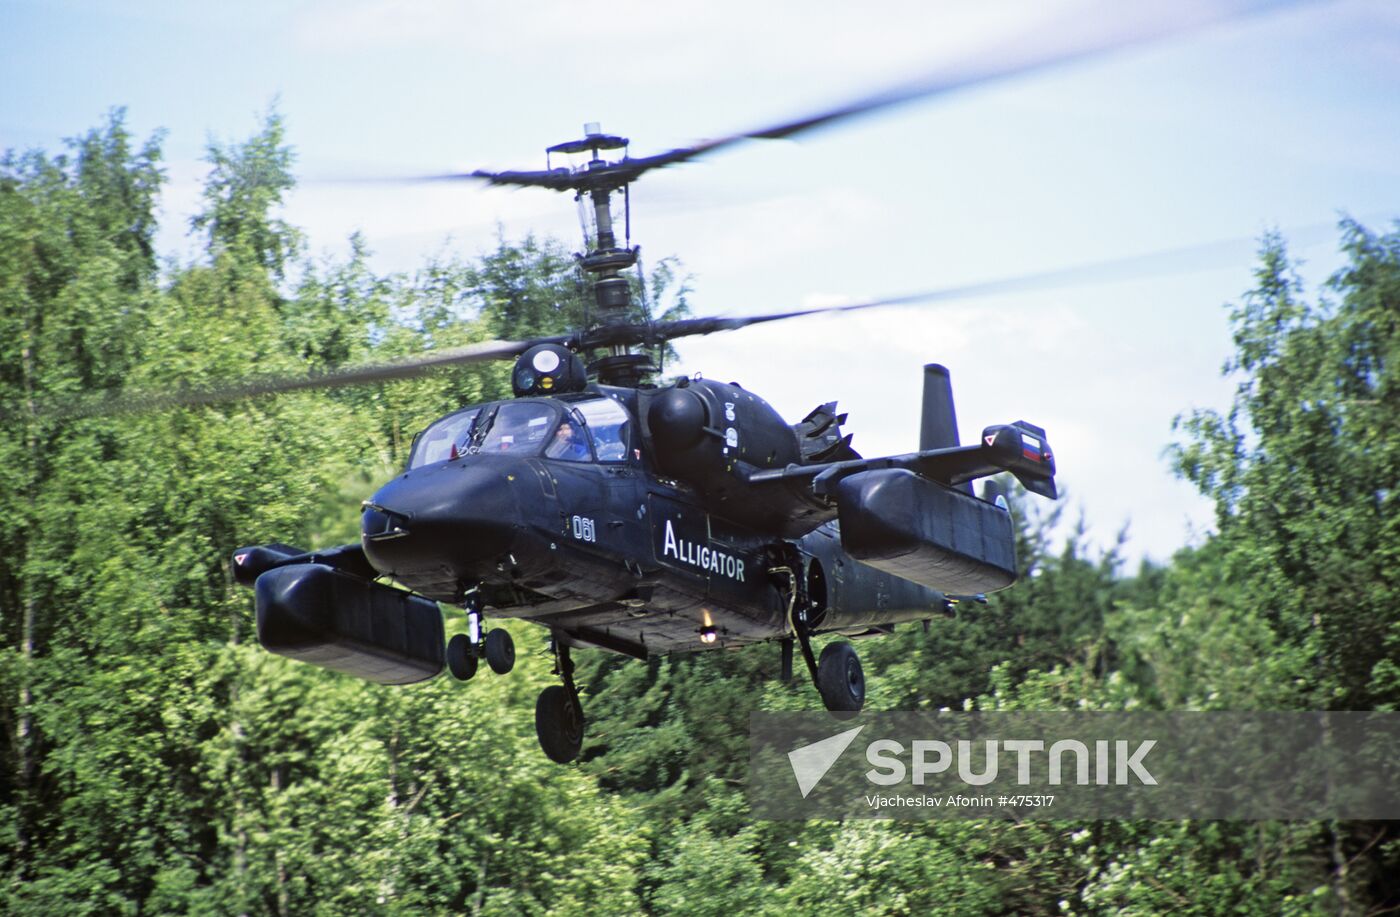 Kamov Ka-52 Alligator attack helicopter